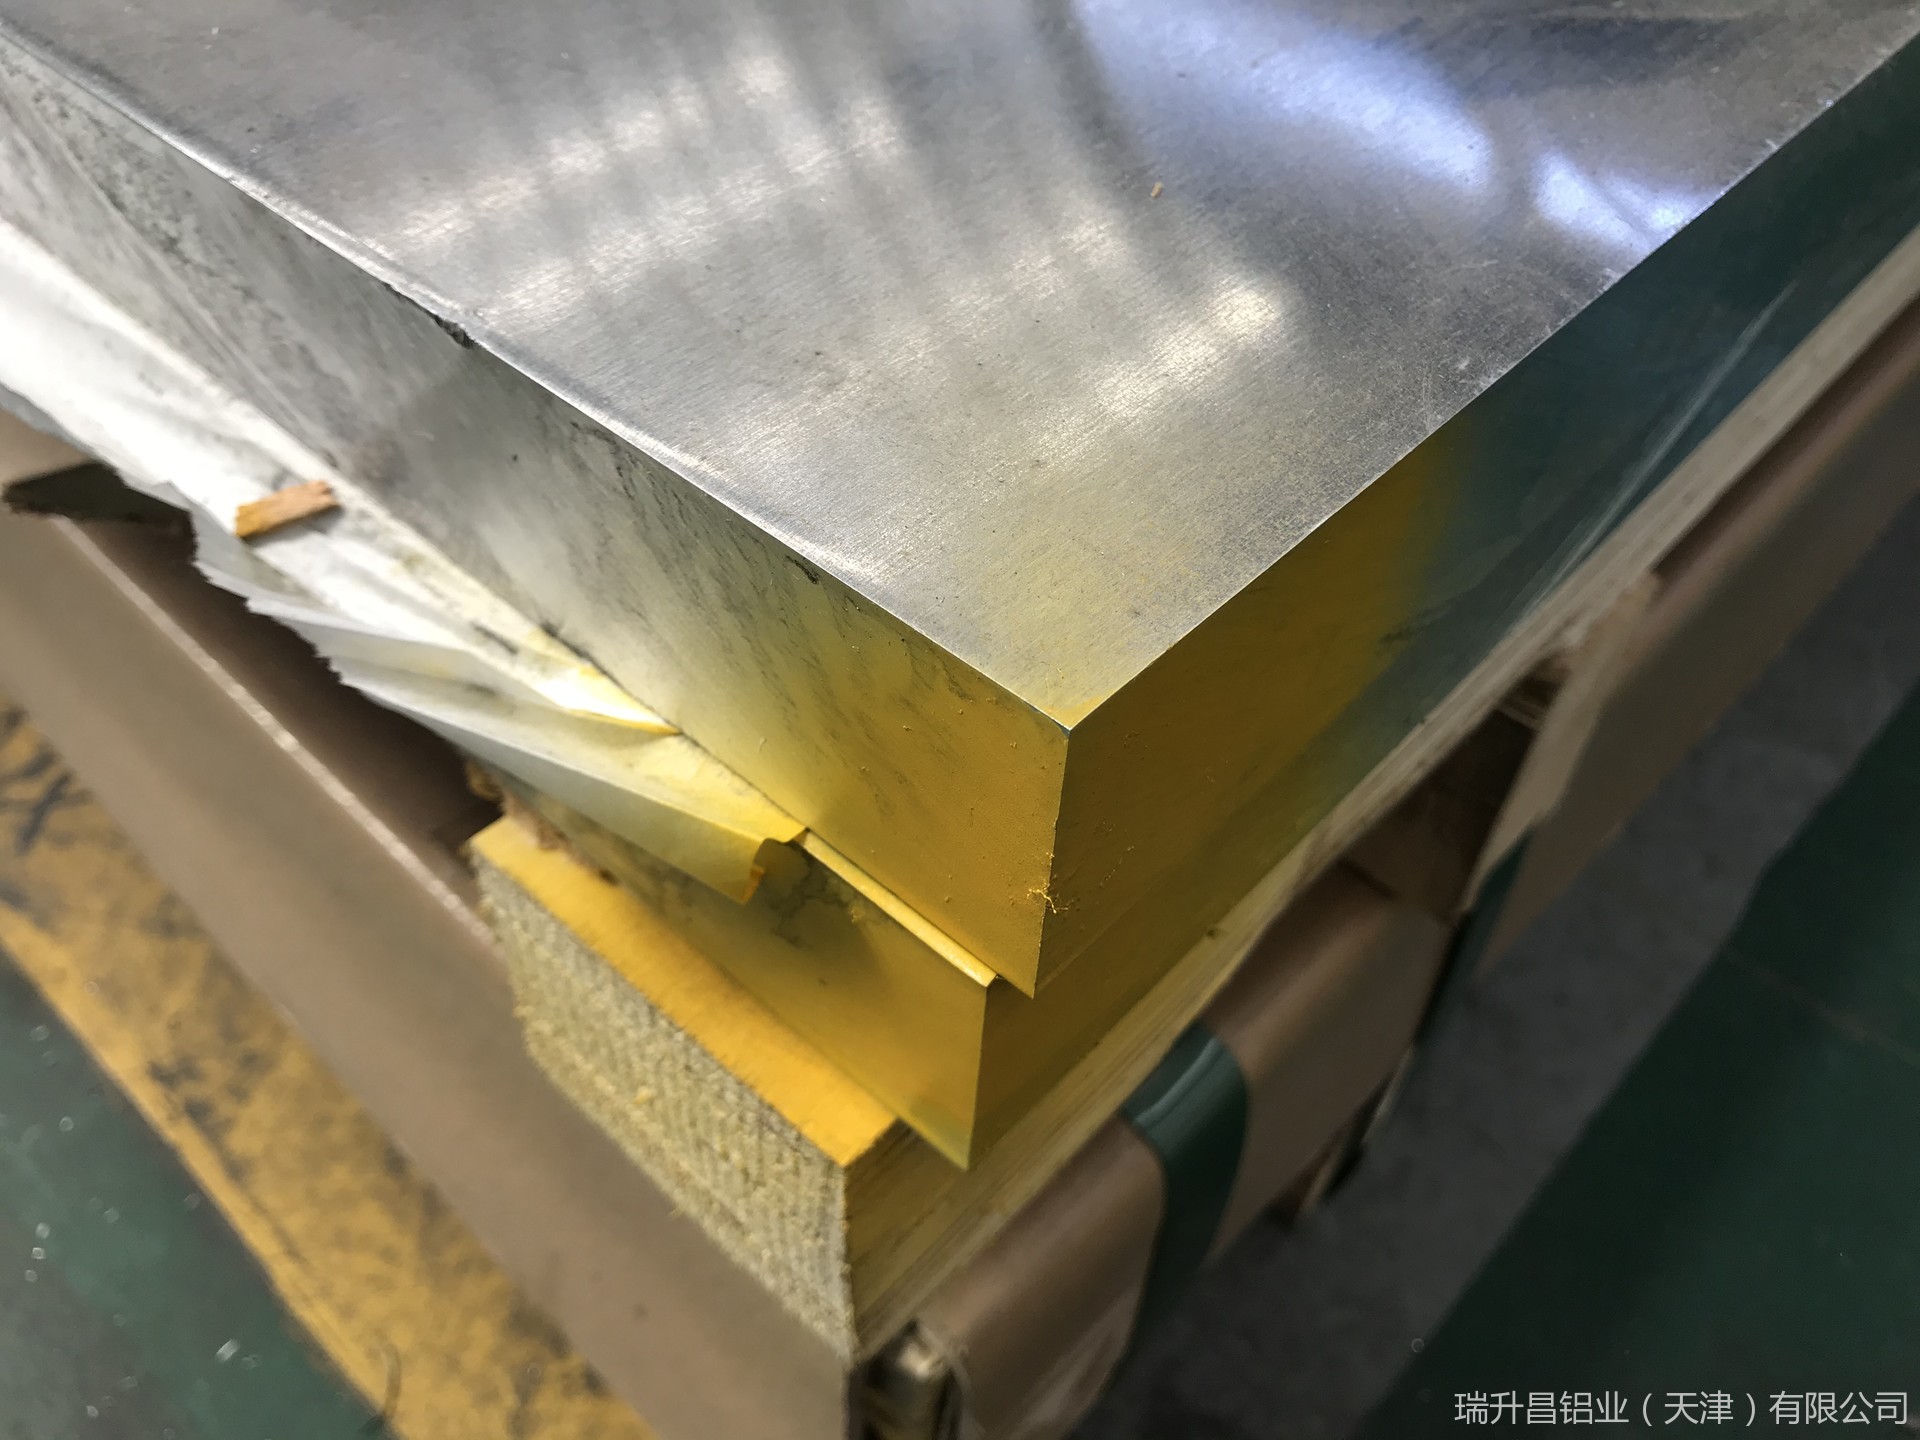 天津瑞升昌铝业供应2A12合金铝板 国标铝板2a12超硬铝价格 2a12h112铝板  LY12供应商厂家 成批出售可切割示例图13